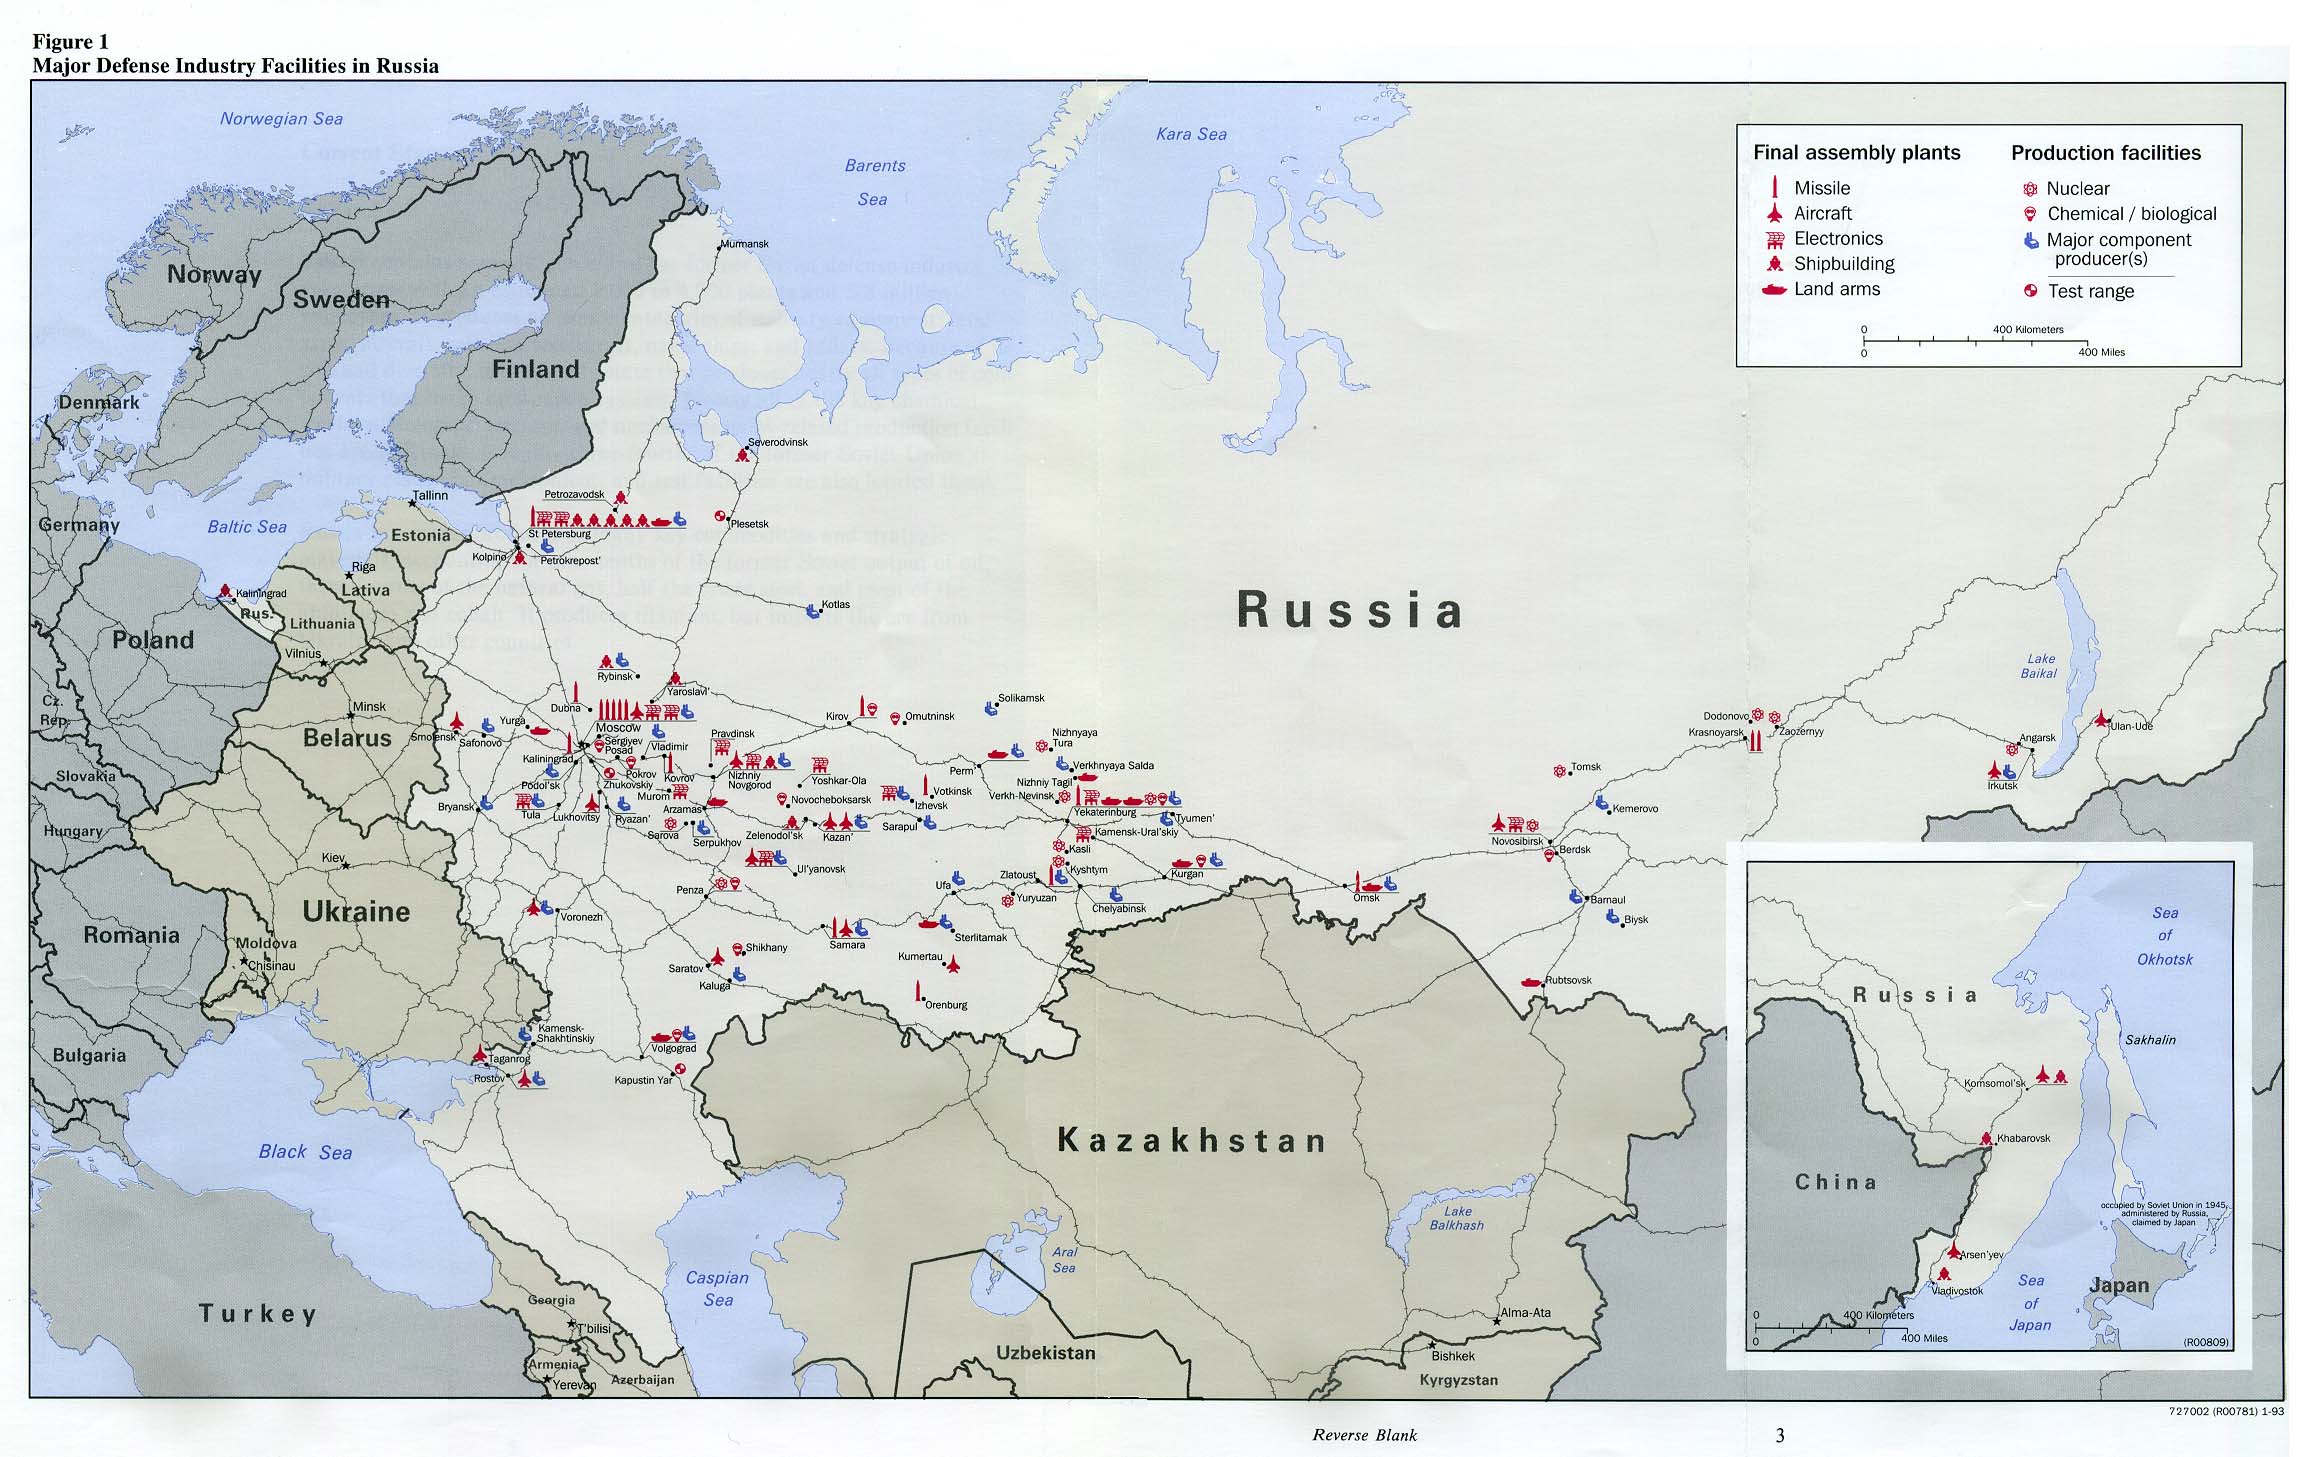 http://www.lib.utexas.edu/maps/commonwealth/russia_defense93.jpg